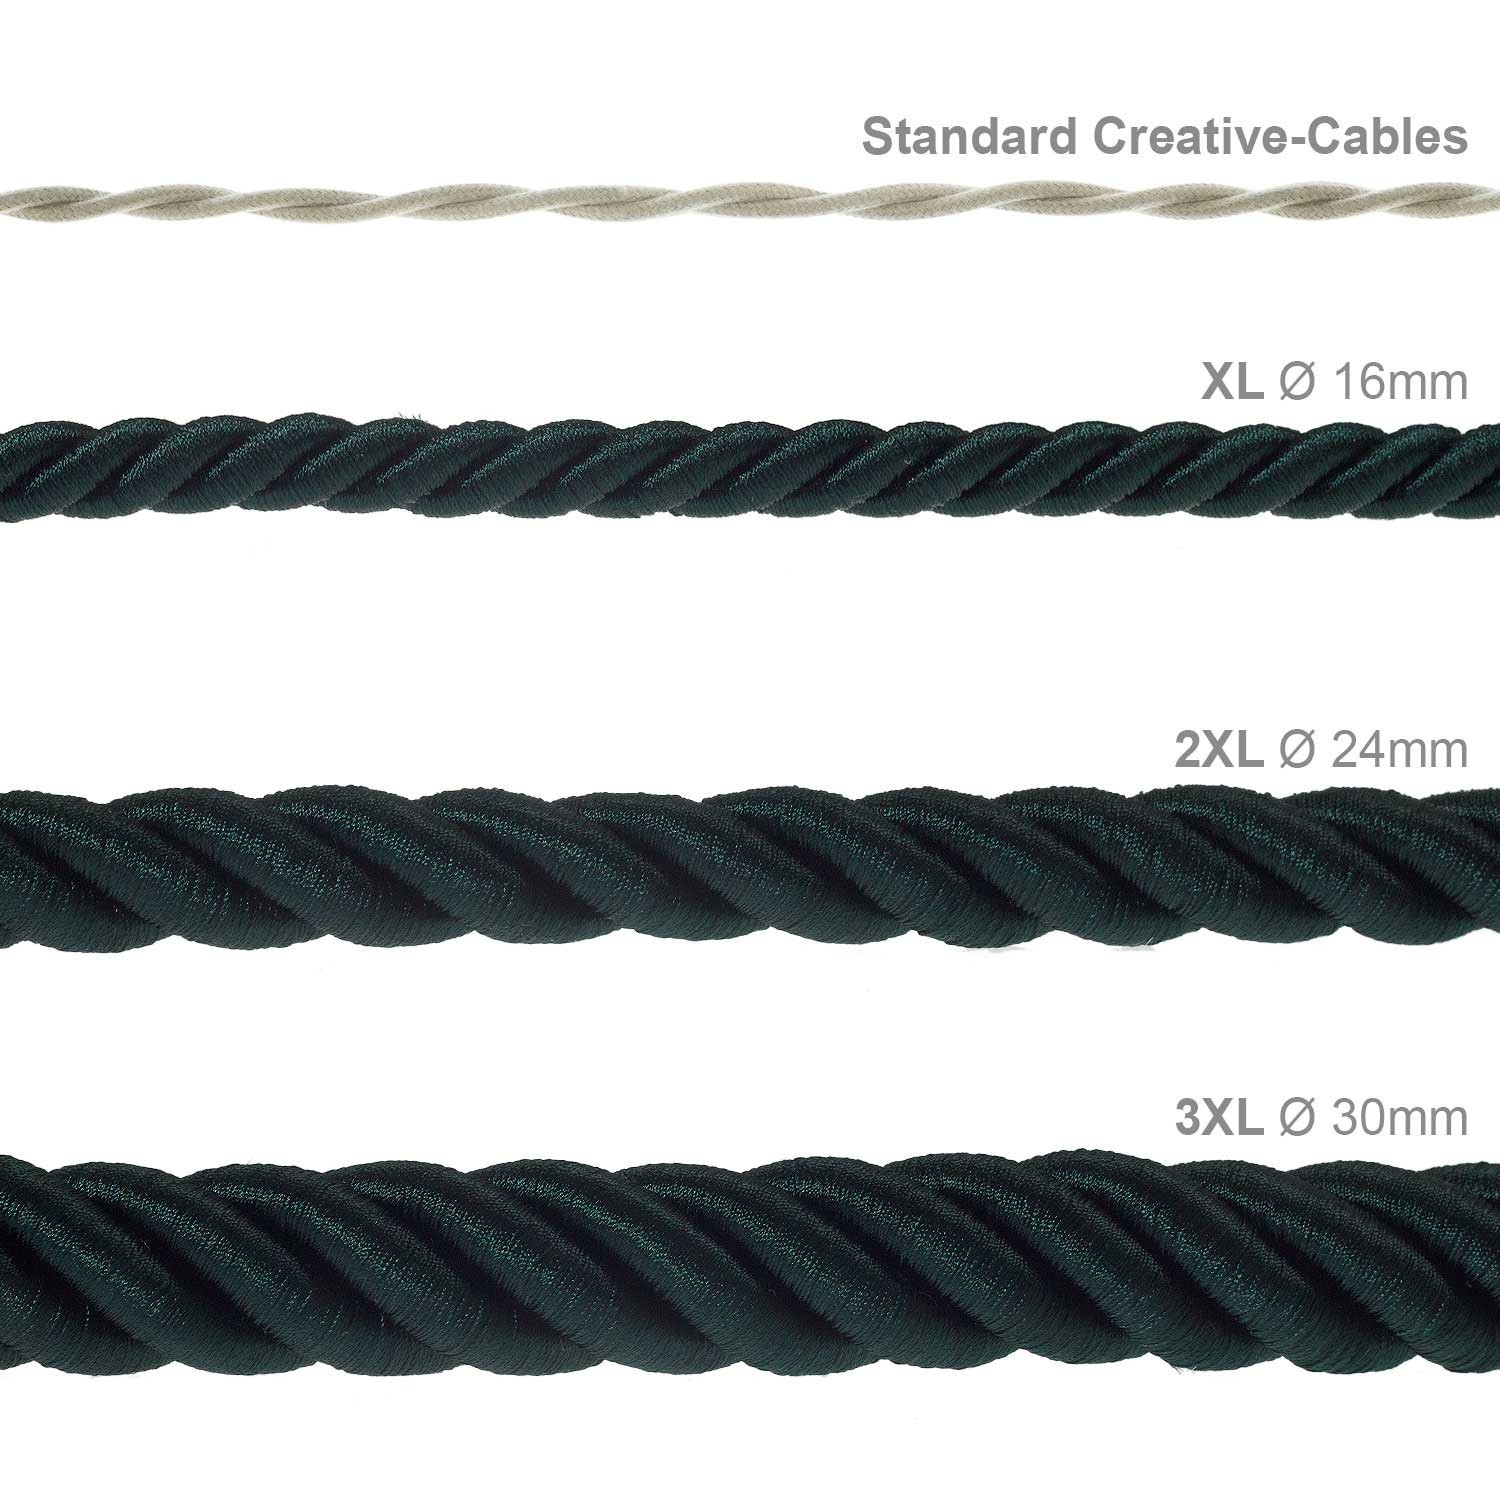 Electrische XL touwkabel, 3 x 0,75 mm. Binnenkabels bedekt met donkergroen textiel. Diameter 16 mm.